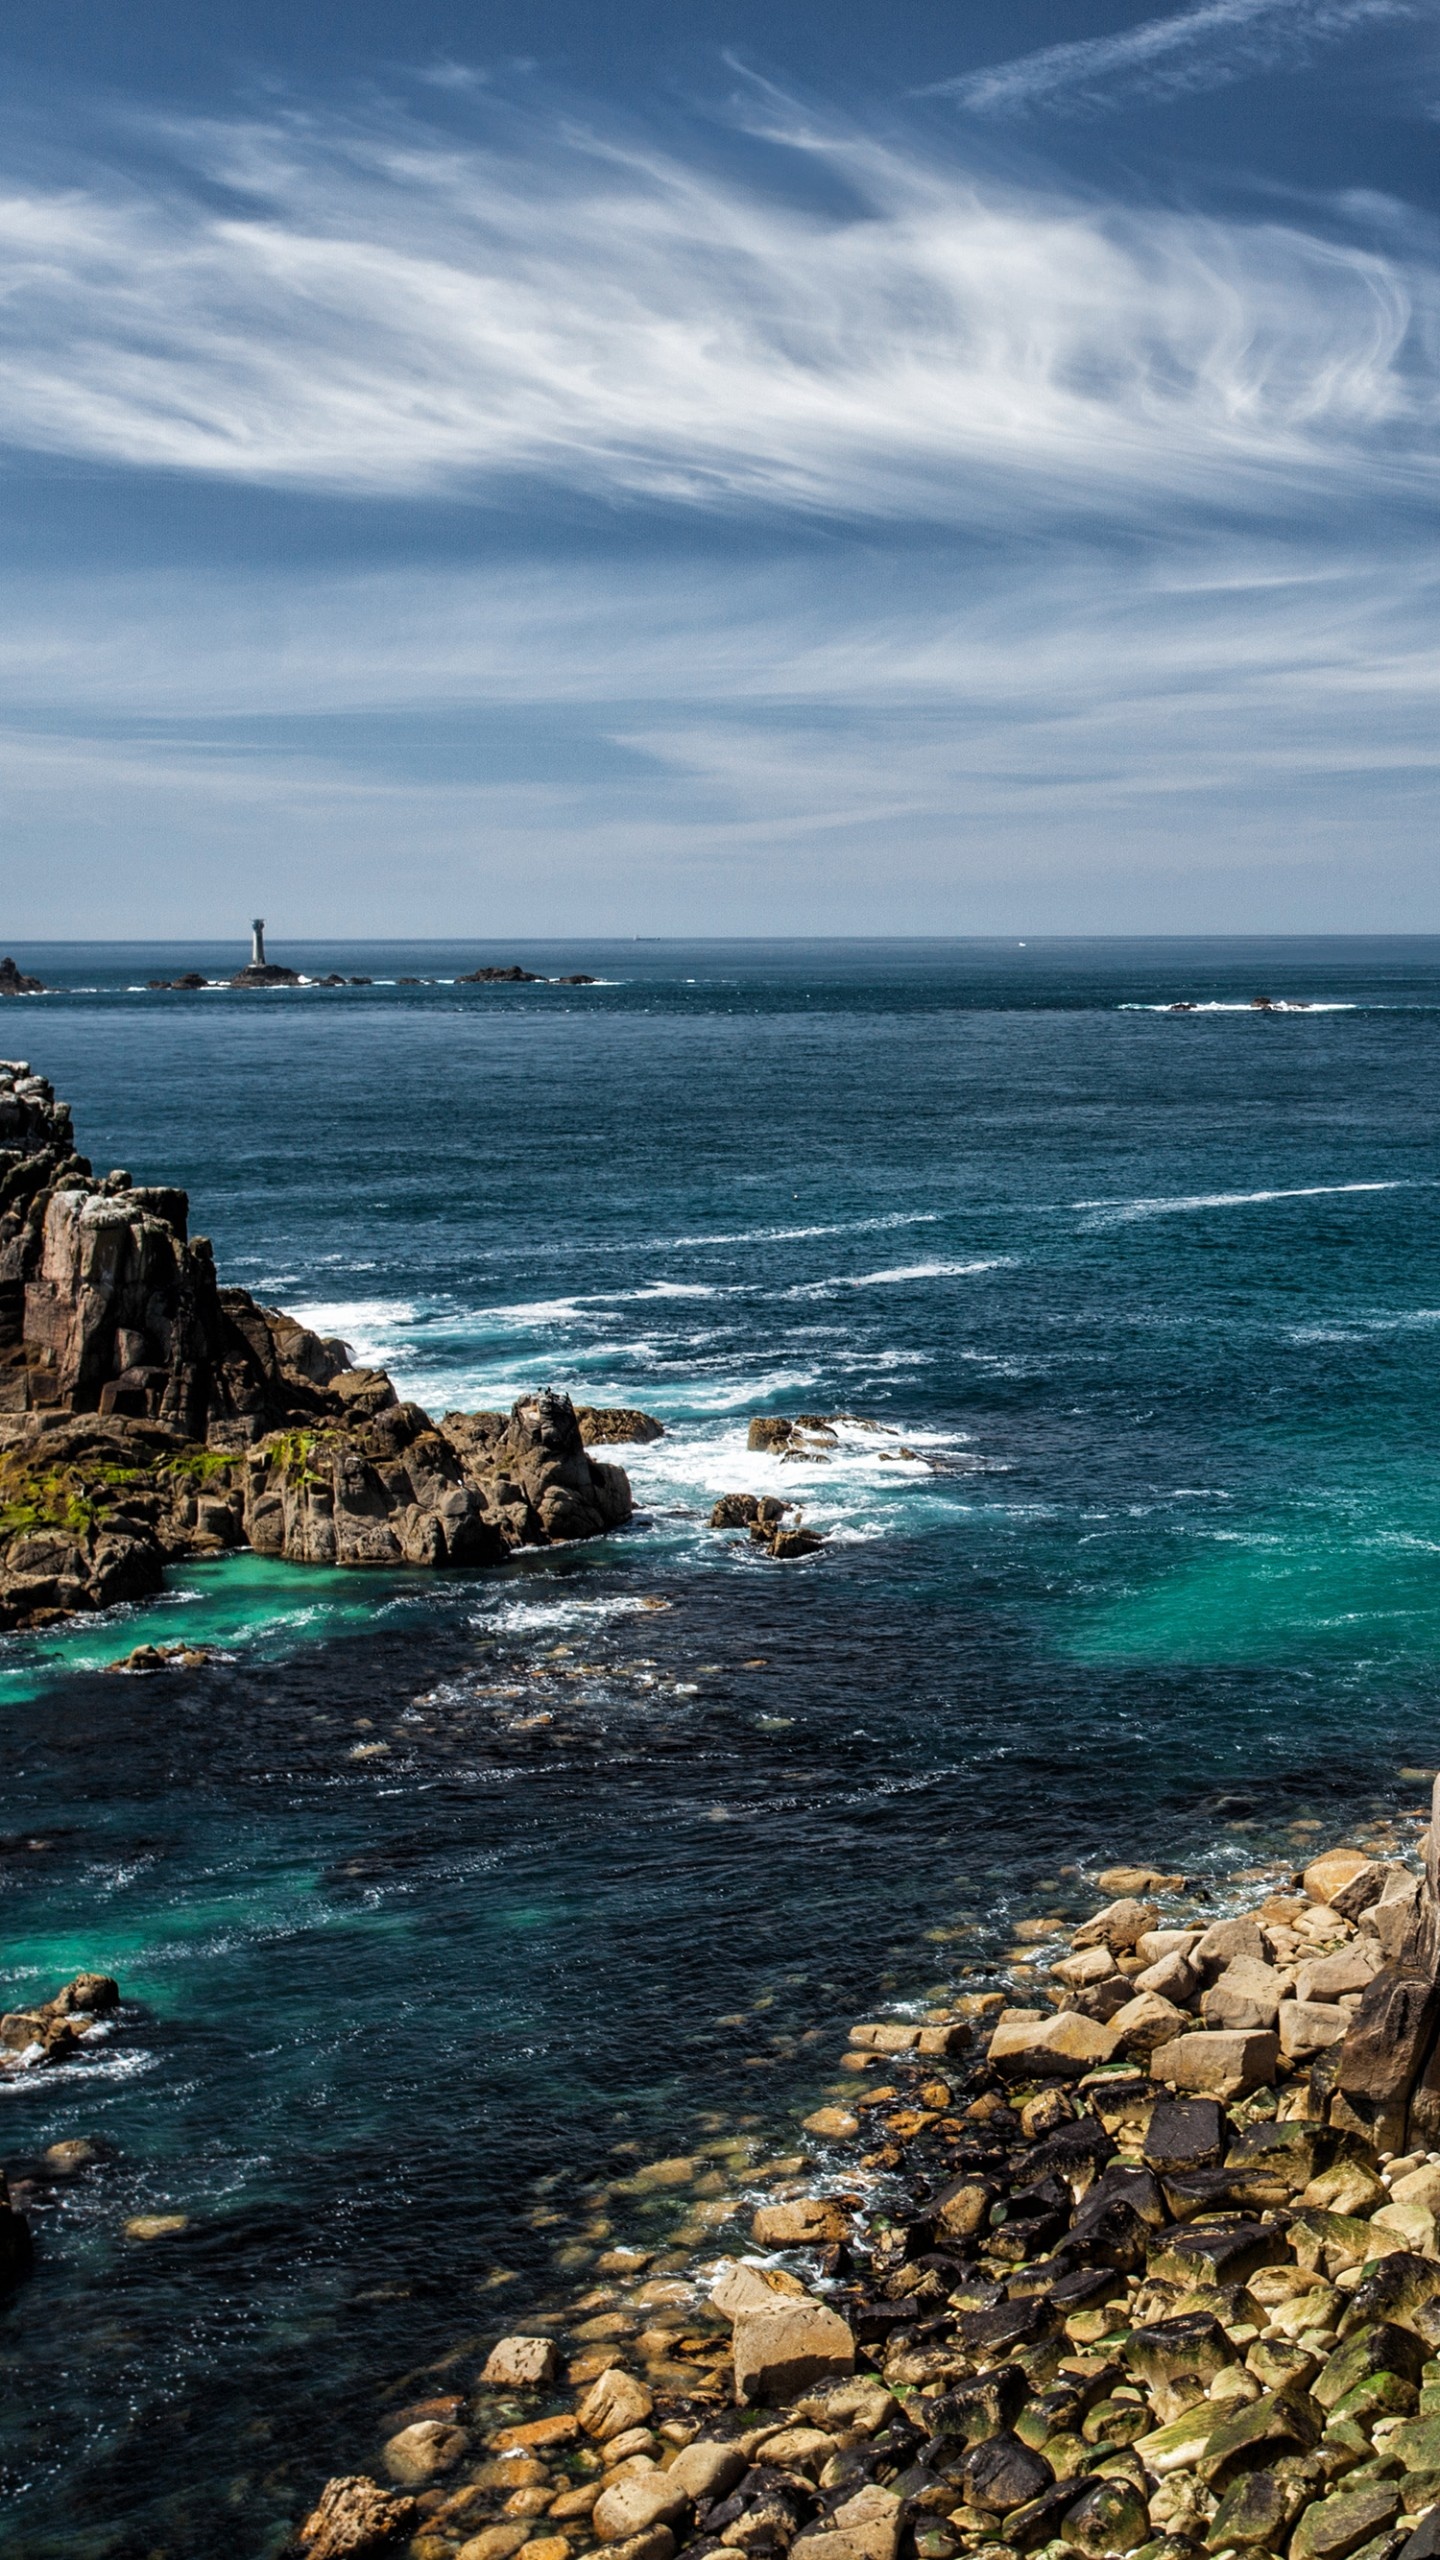 Atlantic Ocean, 5K wallpaper, High-resolution image, Stunning visuals, 1440x2560 HD Handy